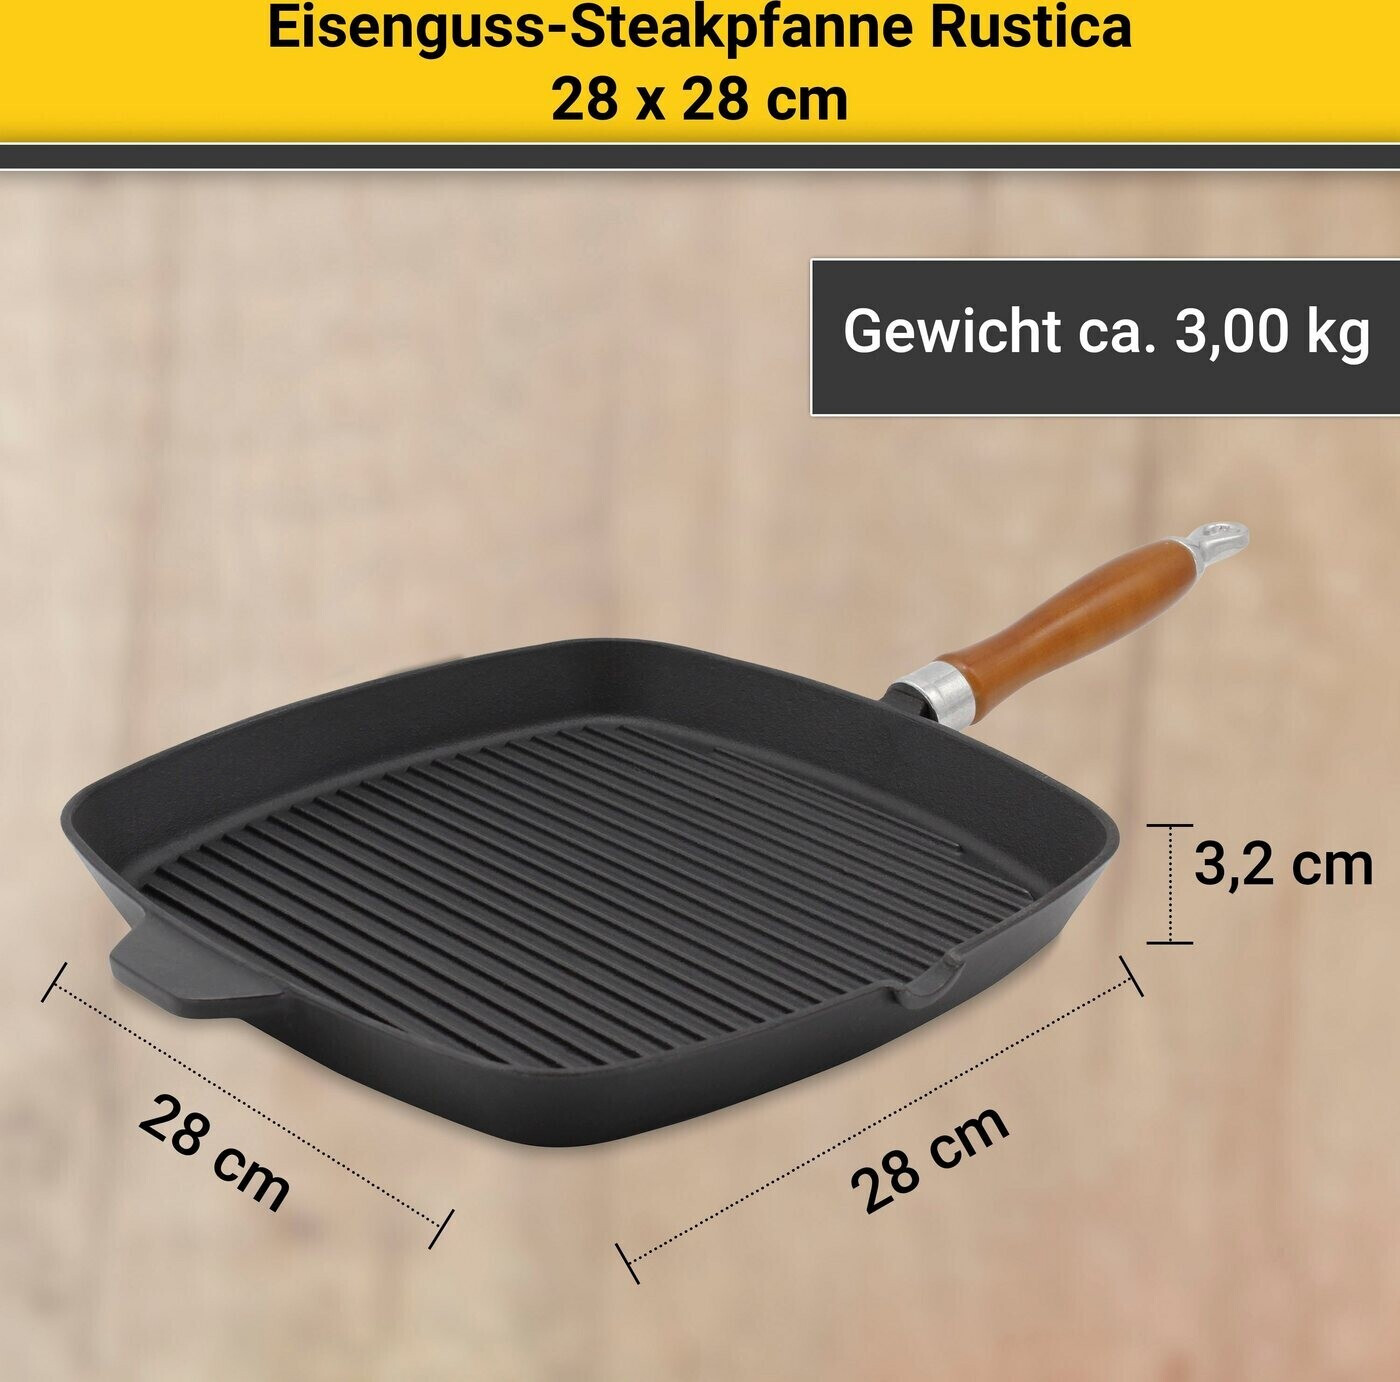 Krüger Rustica Grillpfanne 28 x 28 cm ab 39,95 € | Preisvergleich bei